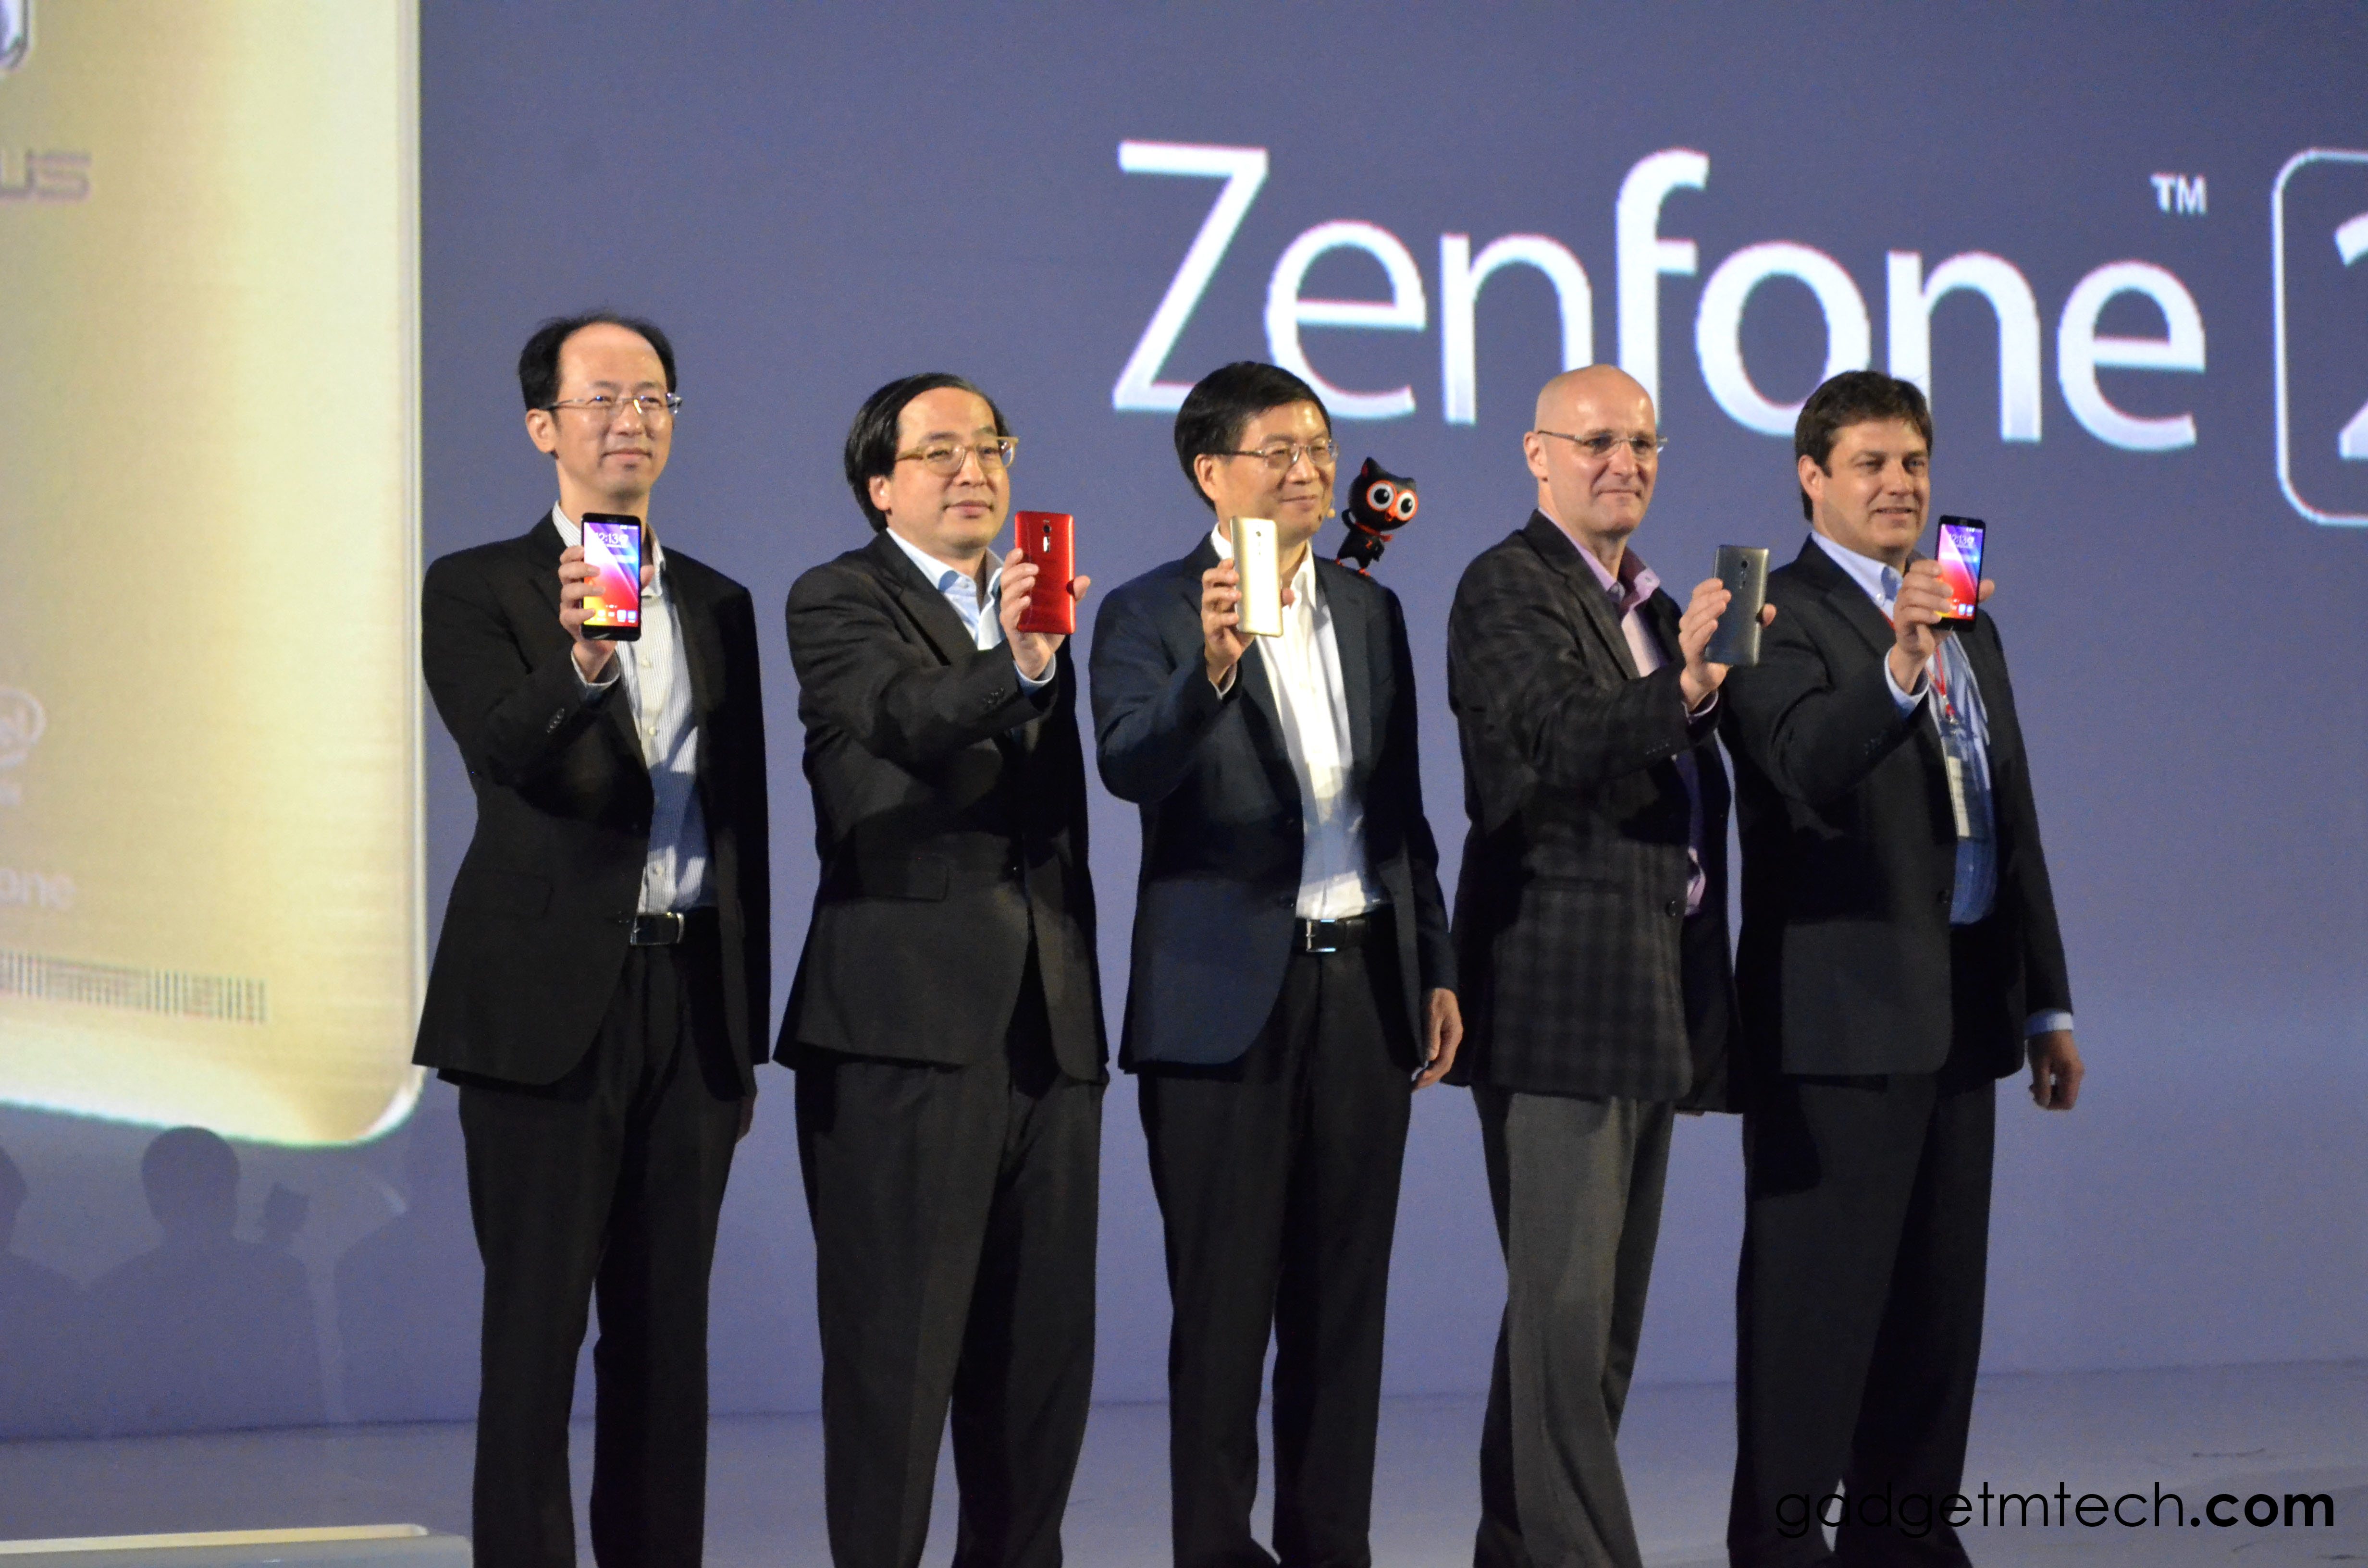 ASUS ZenFone 2 Regional Launch